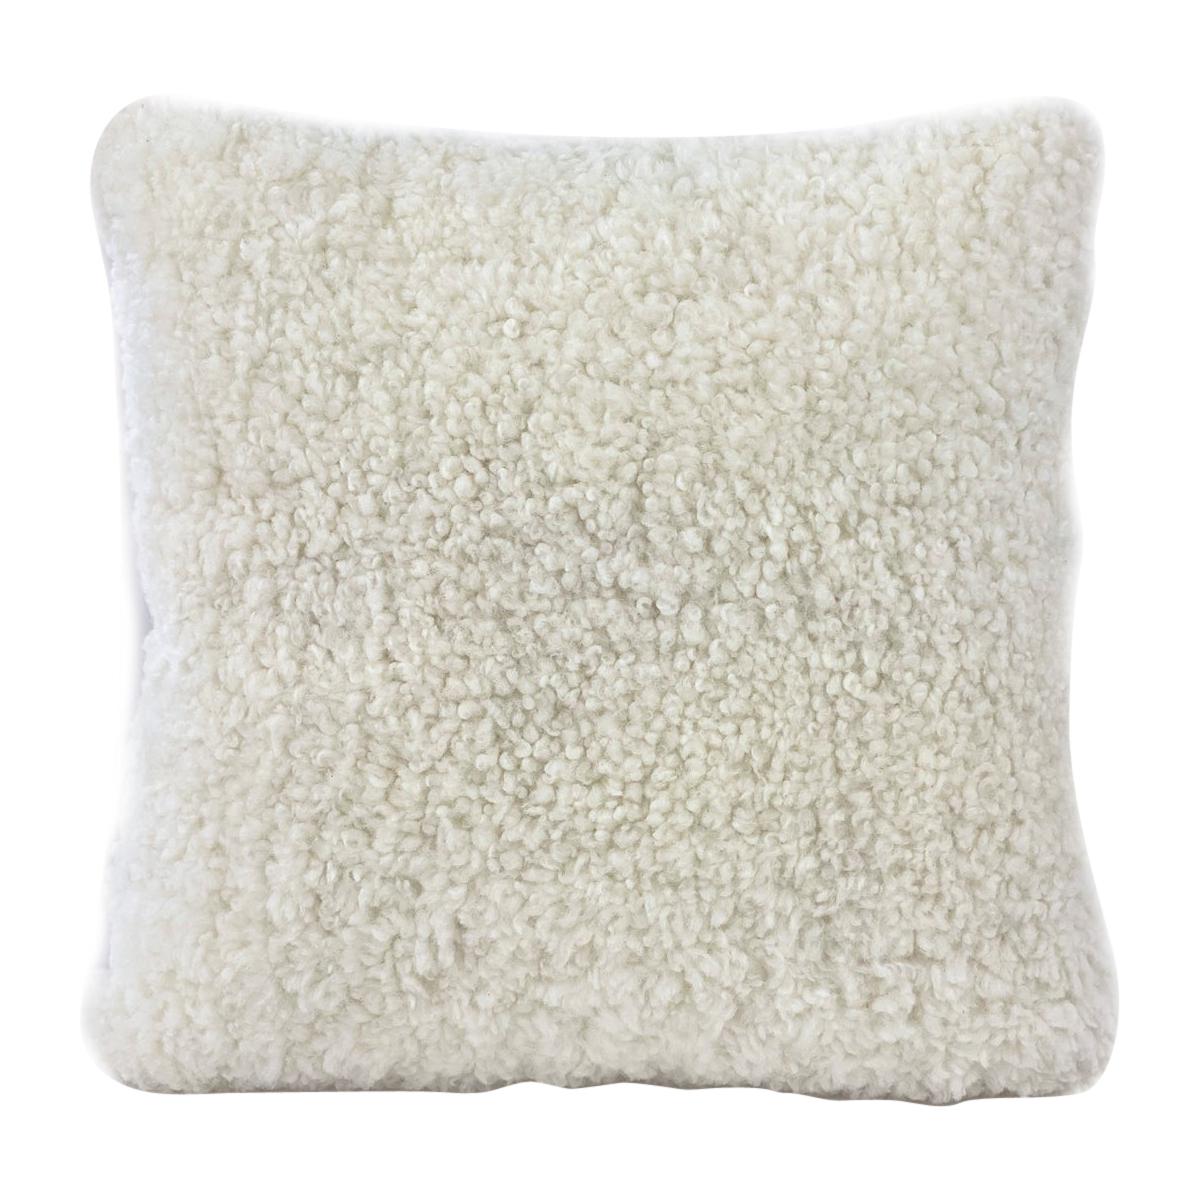 Shearling-Kissen, weißes Schafsfell, quadratisch, 18x18 Zoll  40 x 40 cm 